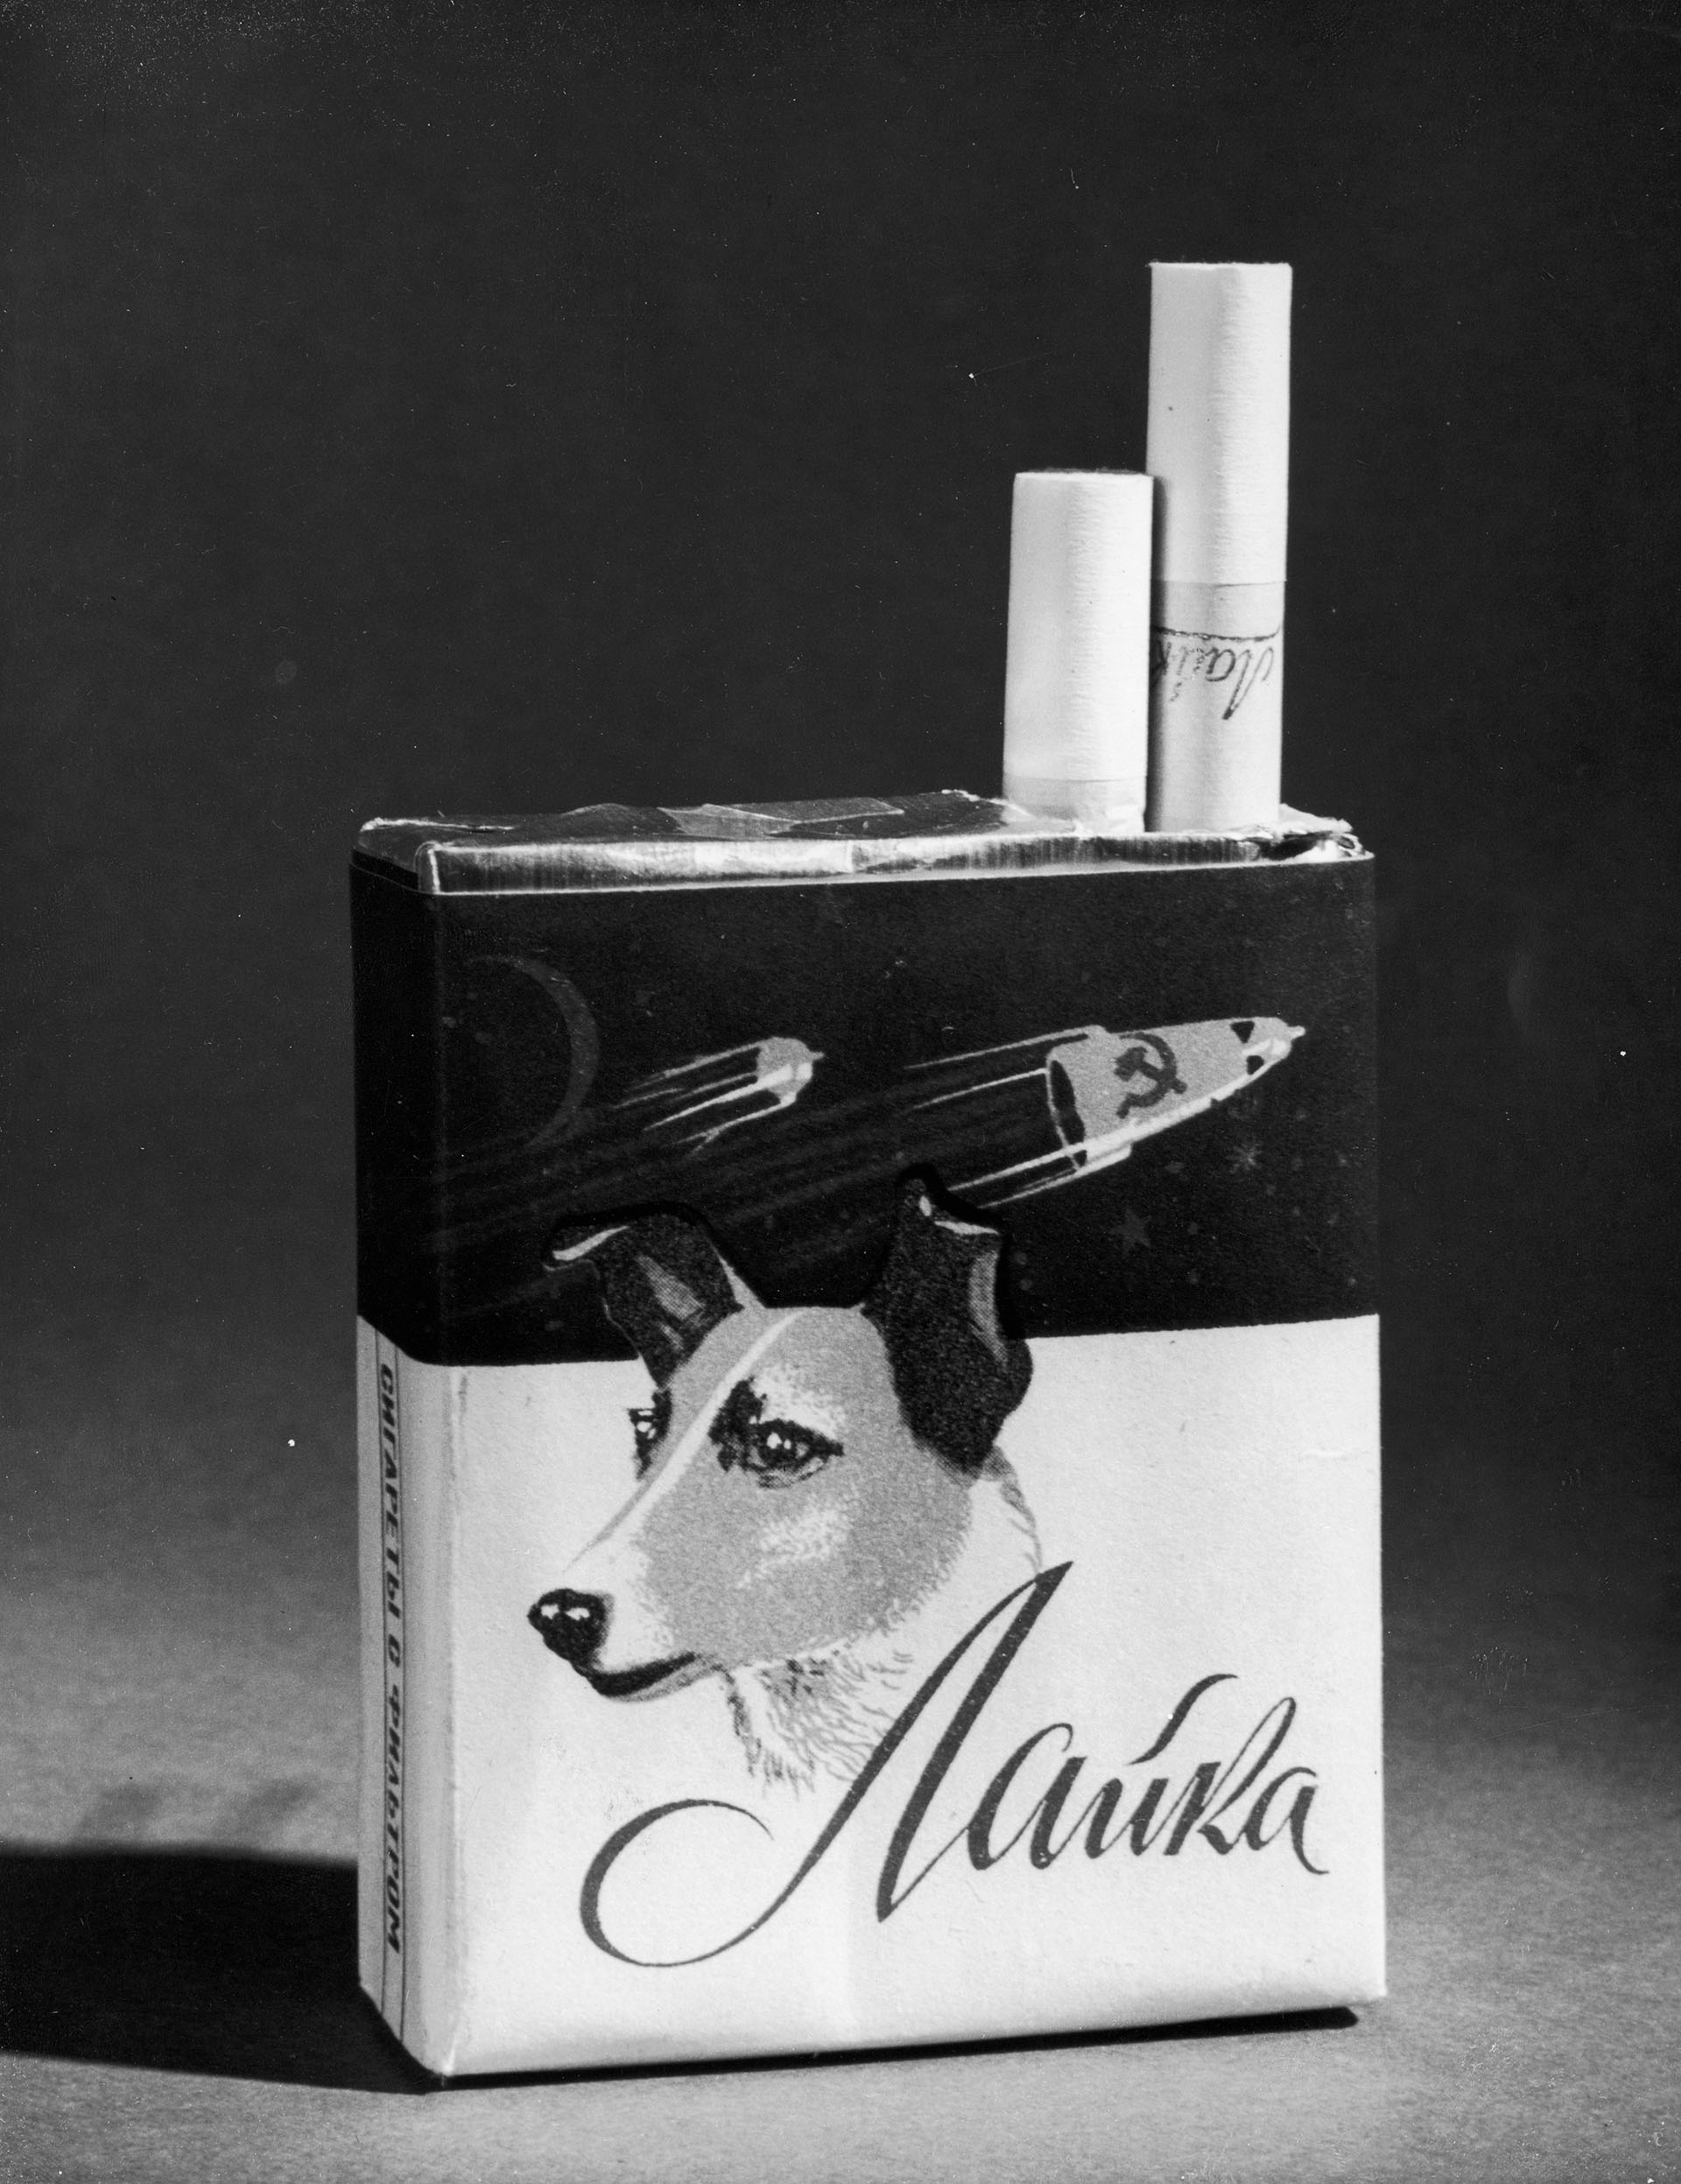 Cigarrillos soviéticos Laika. La perra, inútilmente sacrificada, era parte del orgullo de la URSS, que había anticipado a los Estados Unidos en enviar un ser viviente al espacio (Photo by Fox Photos/Getty Images)